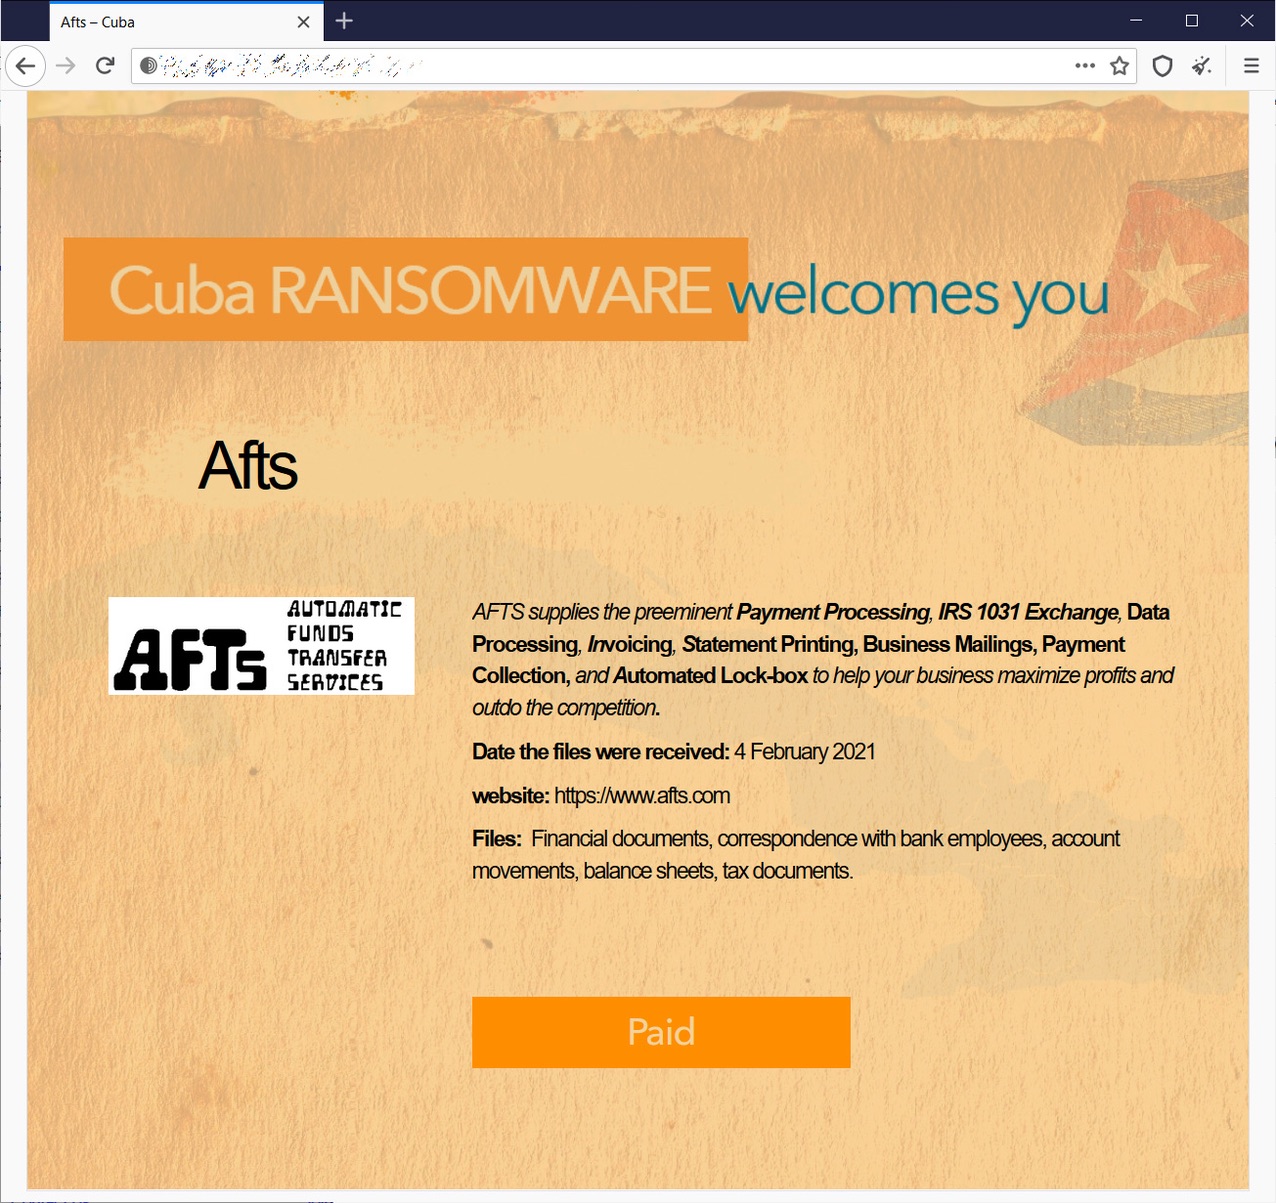 Cuba Ransomware